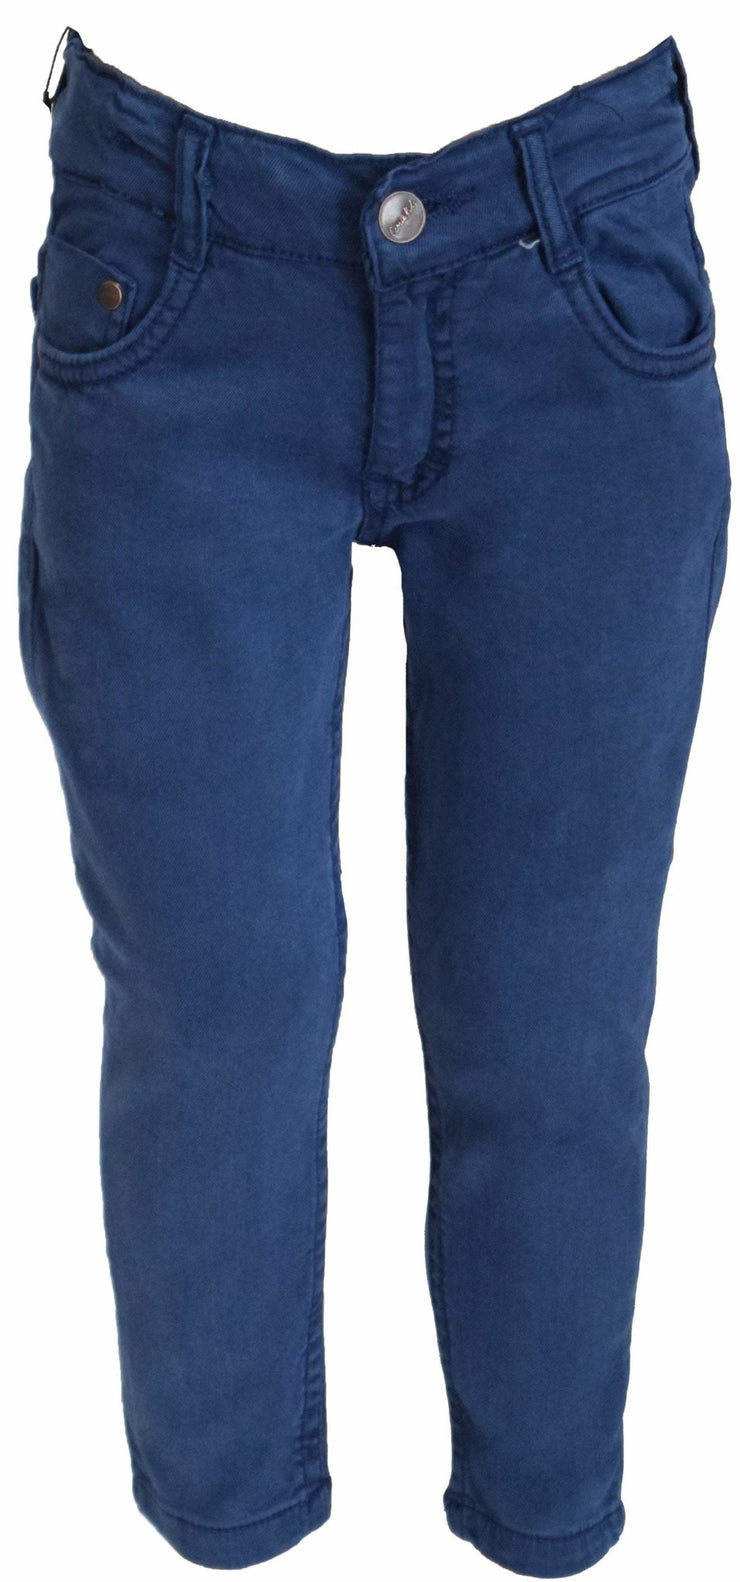 Boys Blue Pants - Elma's Clothing